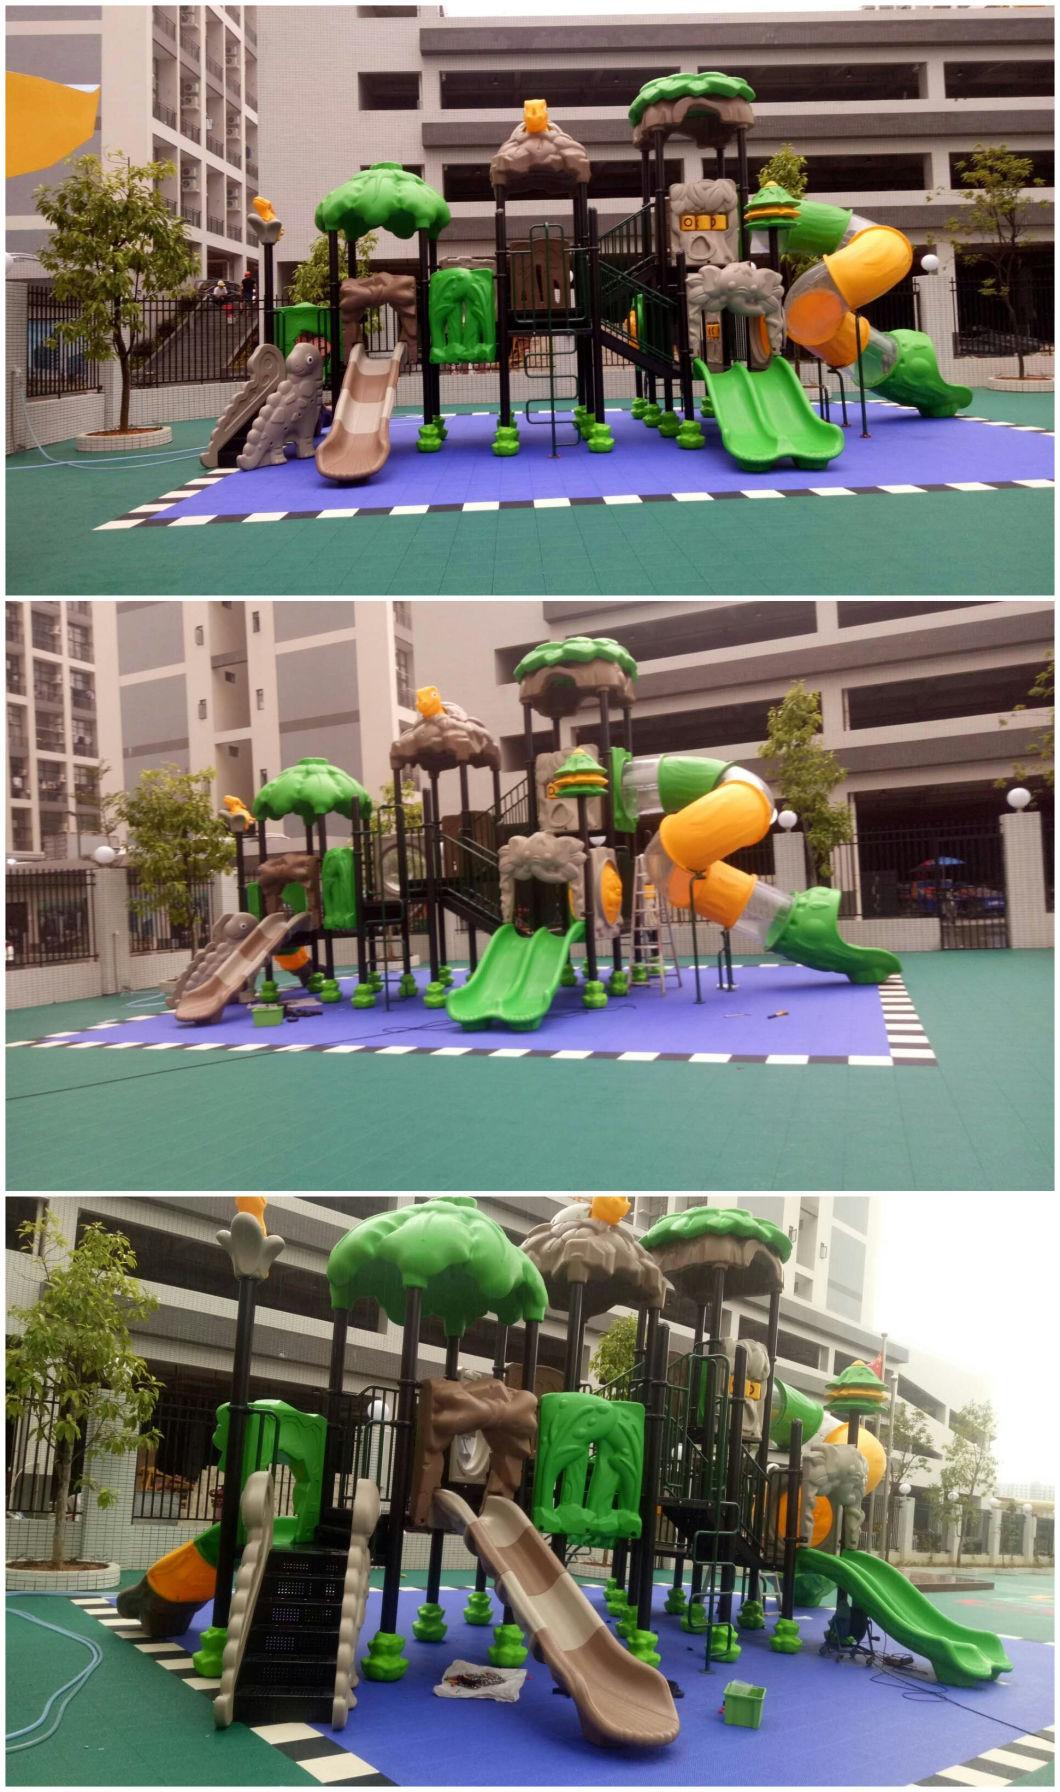 China Manufactory Playground Equipment Outdoor Kids Outdoor Playground